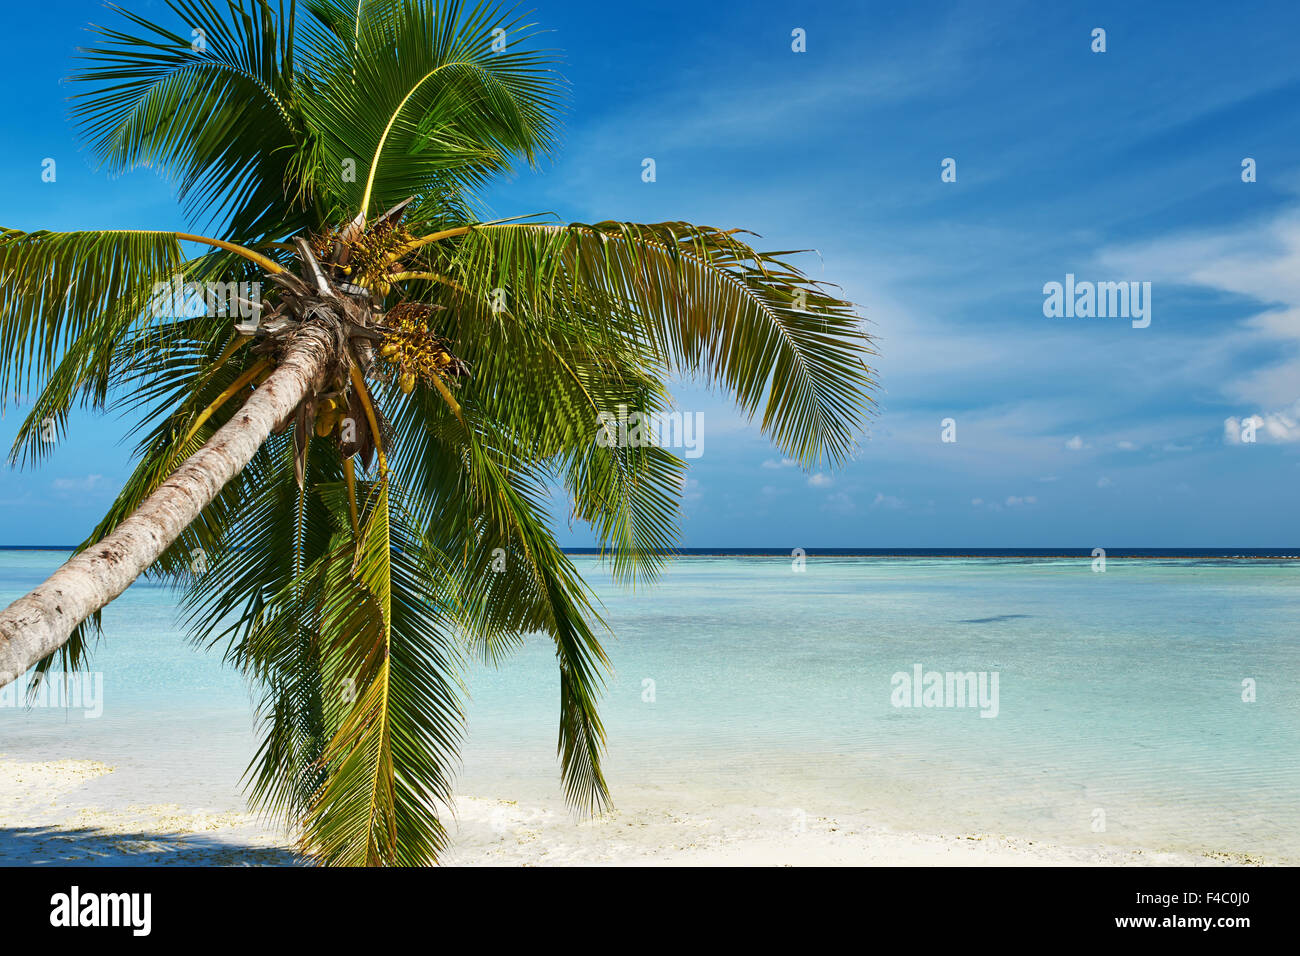 Beautiful beach with palm tree at Maldives Stock Photo